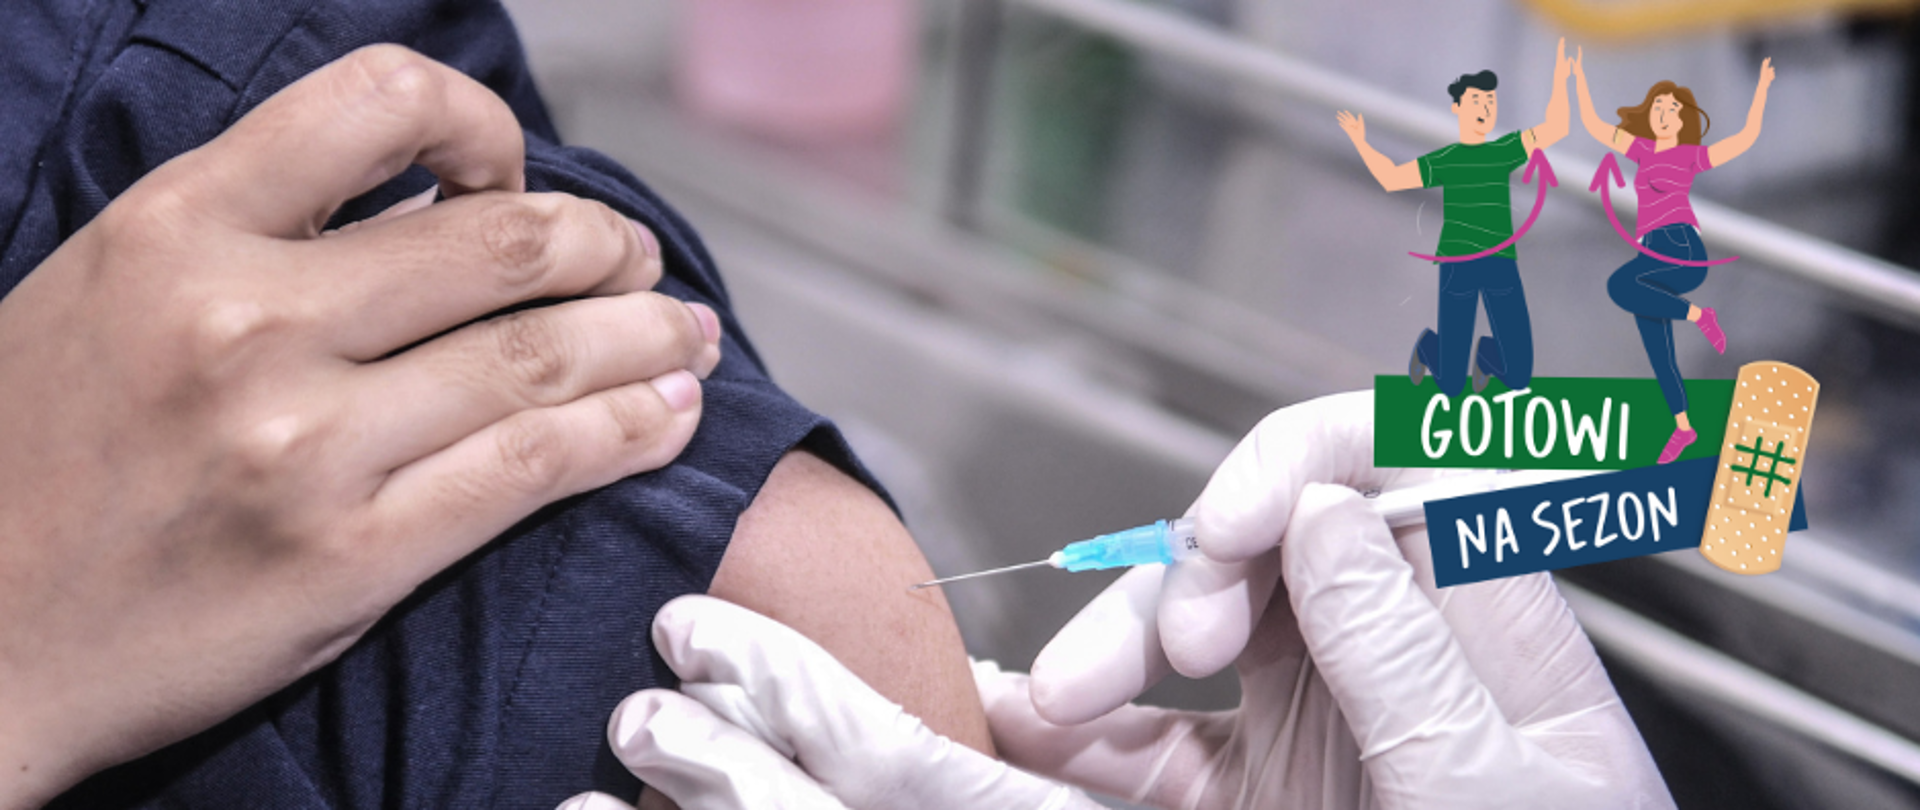 Zdjęcie przedstawia wykonanie szczepienia w ramię. Opis Gotowi na sezon, Pokaż że jesteś #GotowyNaSezon. Eksperci rekomendują jednorazowe szczepienie przeciw grypie, COVID-19 oraz pneumokokom.